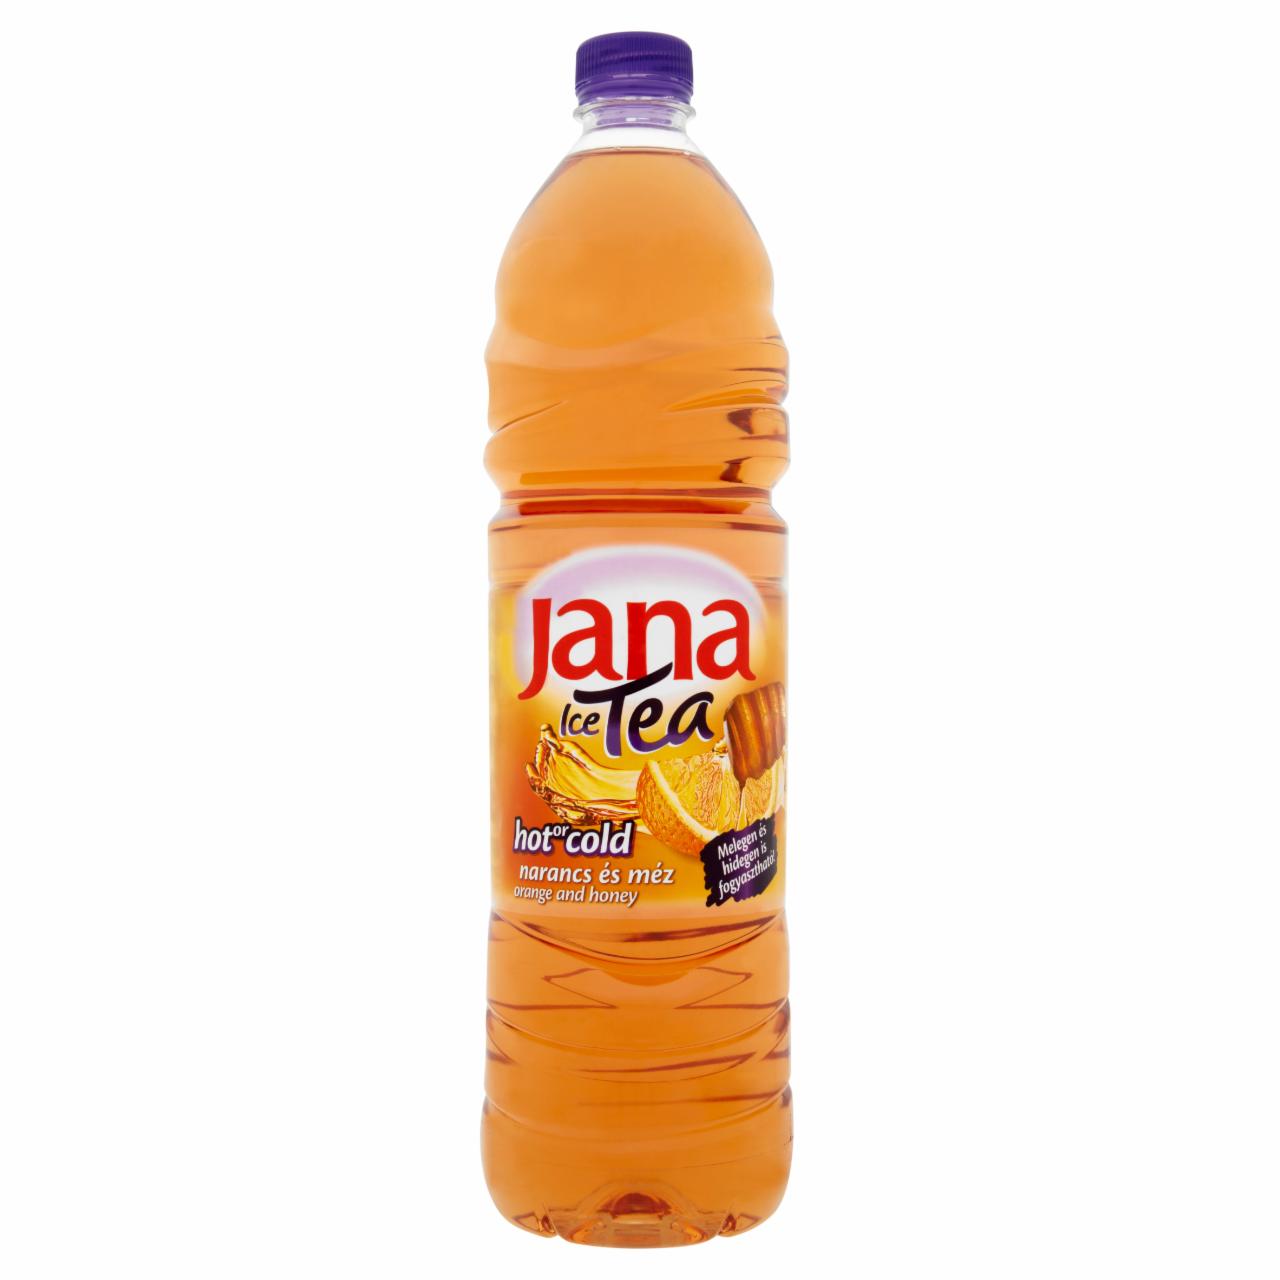 Képek - Jana Ice Tea szénsavmentes narancs- és mézízű üdítőital 1,5 l